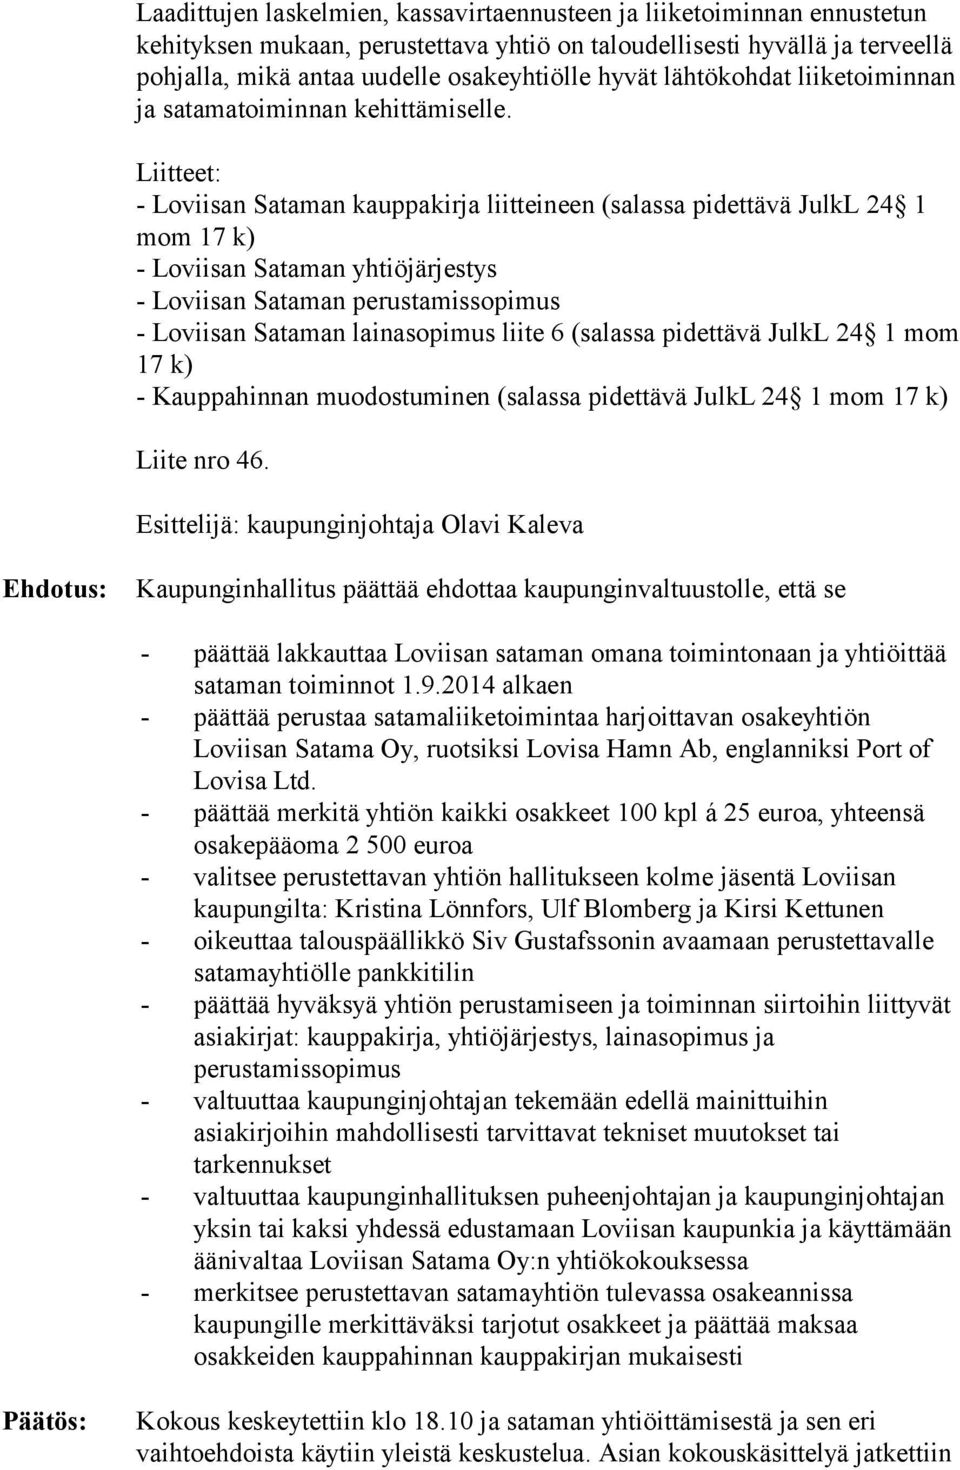 Liitteet: - Loviisan Sataman kauppakirja liitteineen (salassa pidettävä JulkL 24 1 mom 17 k) - Loviisan Sataman yhtiöjärjestys - Loviisan Sataman perustamissopimus - Loviisan Sataman lainasopimus